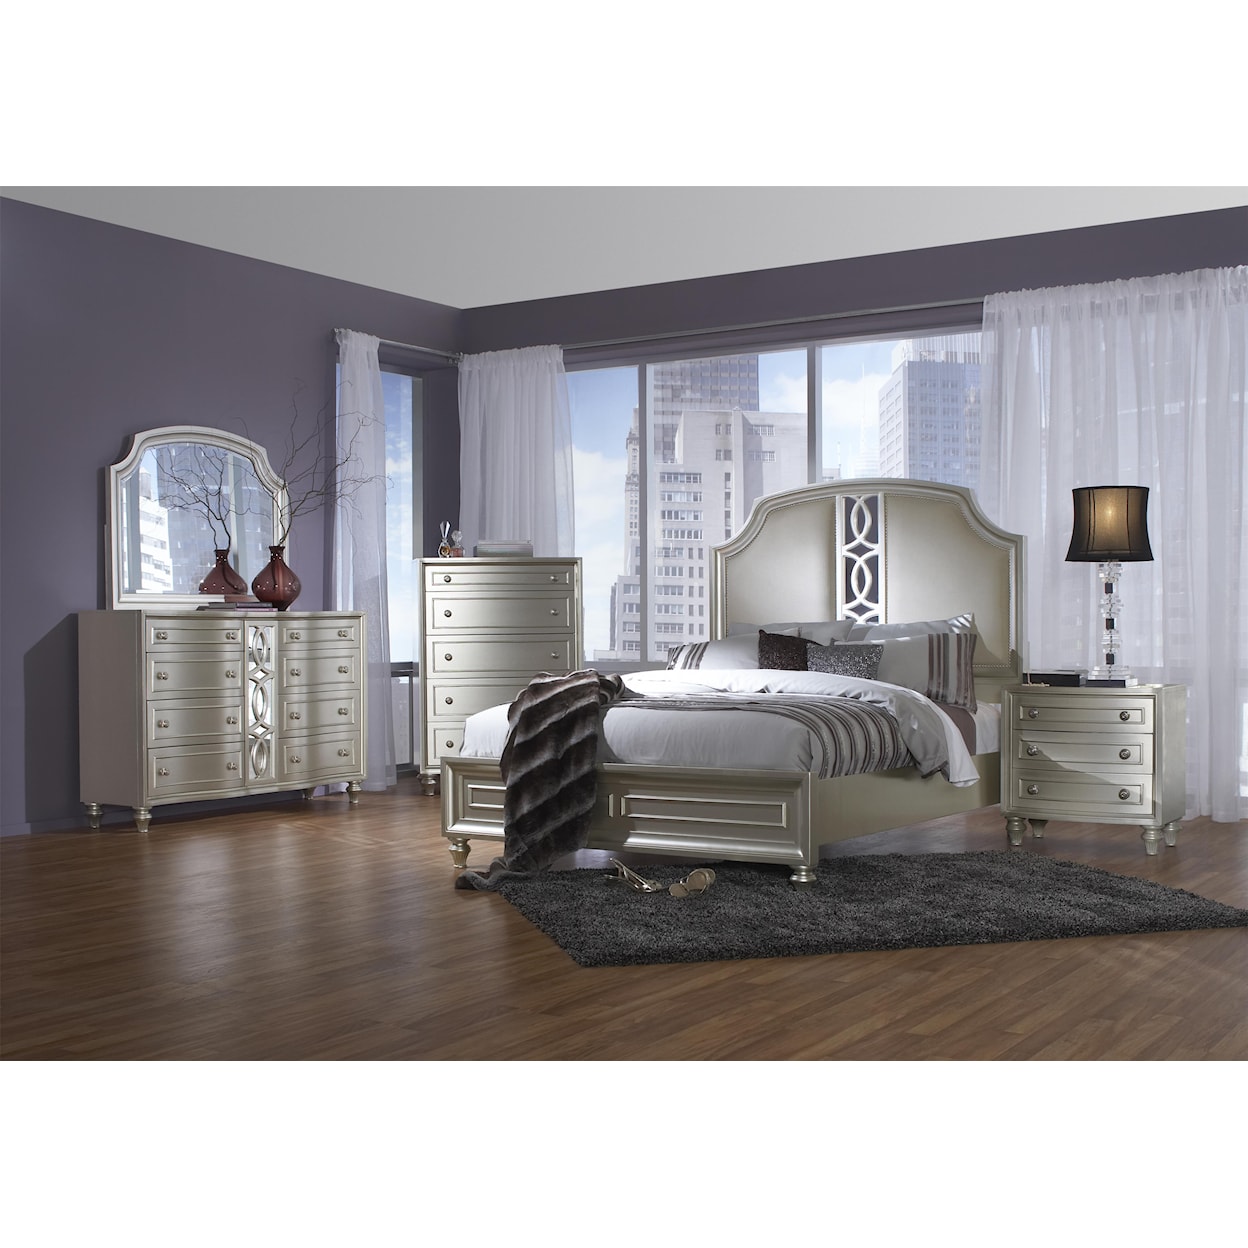 Avalon Furniture Regency Park King Panel Bed